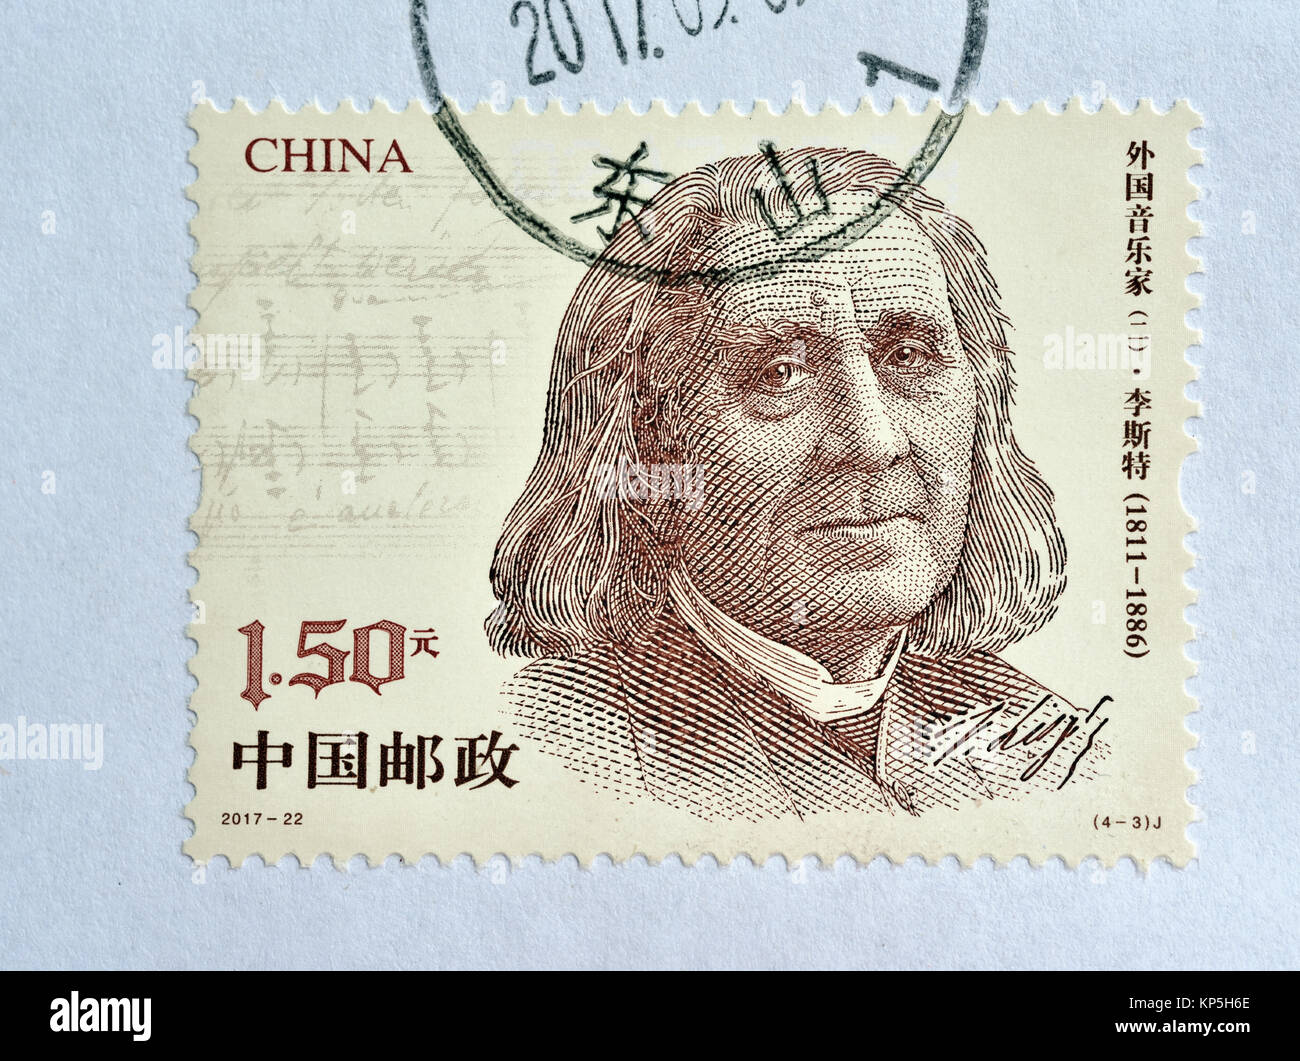 Chine - circa 2017 : timbre imprimé en Chine montre 2017-22 musiciens étrangers (2), (4-3), Franz Liszt, 150 fen, 44 * 33 mm, vers 2017 Banque D'Images